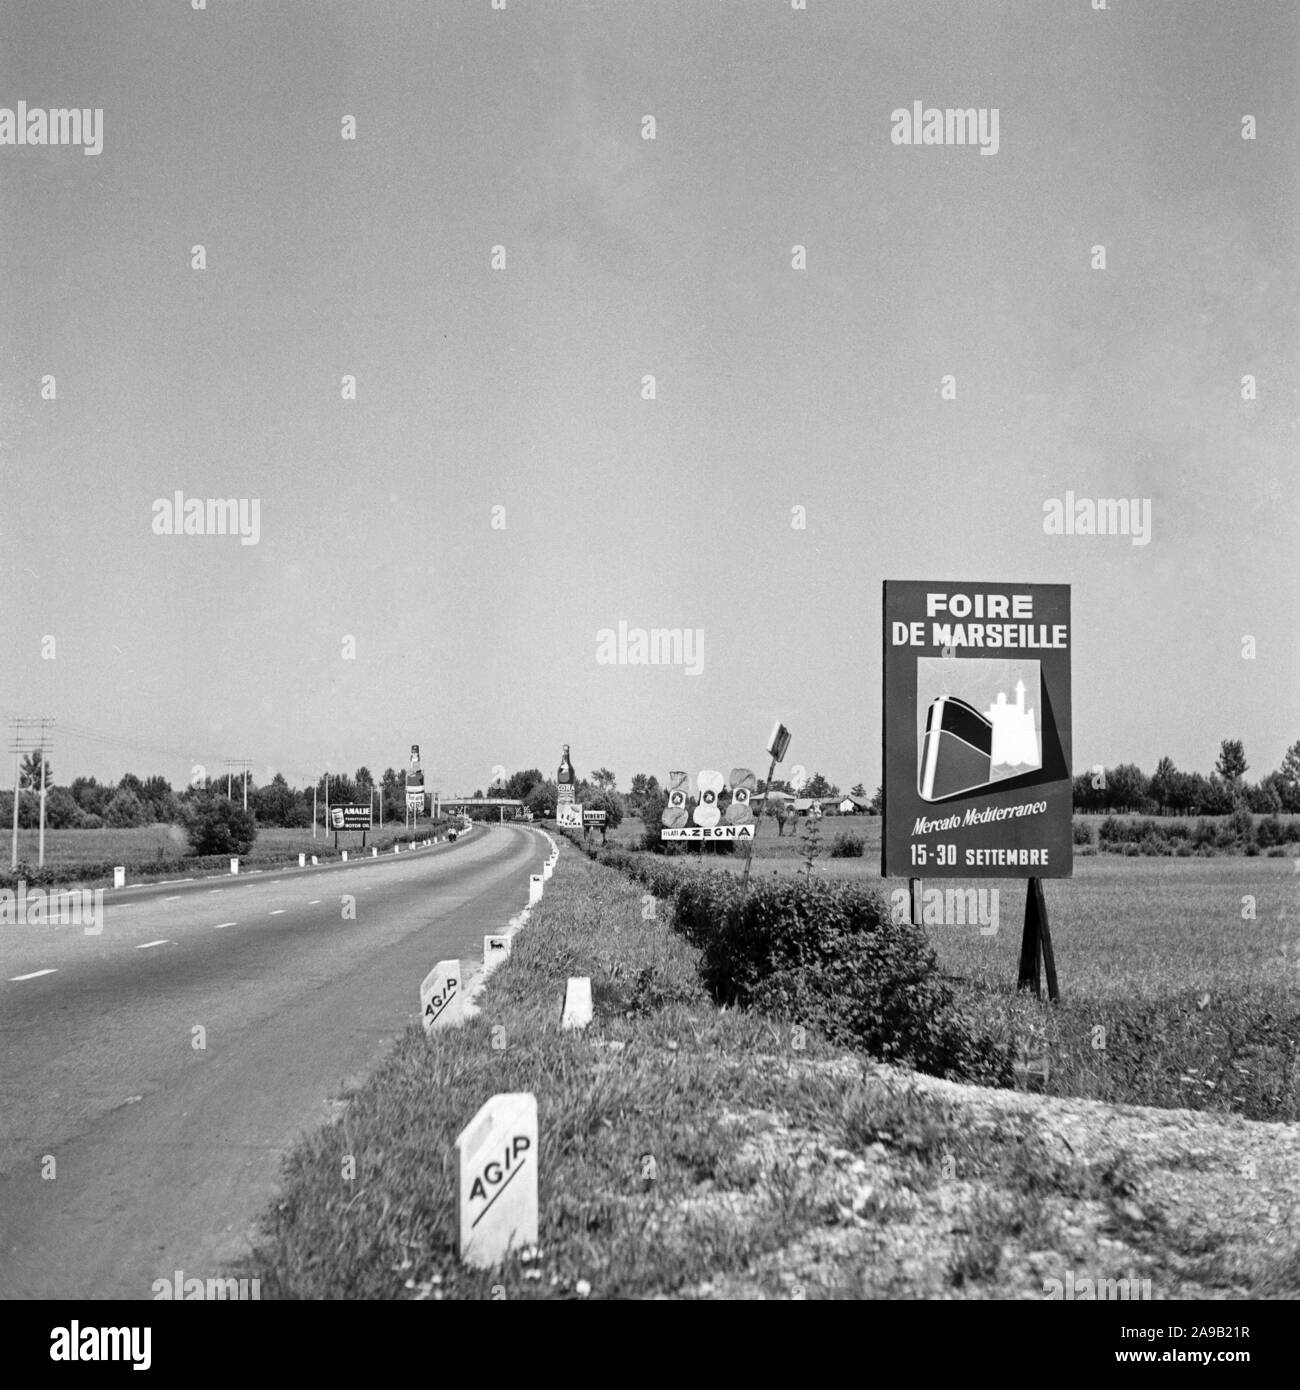 AGIP display advertising presso l'autostrada tra Milano e Navarra, Italia degli anni cinquanta. Foto Stock